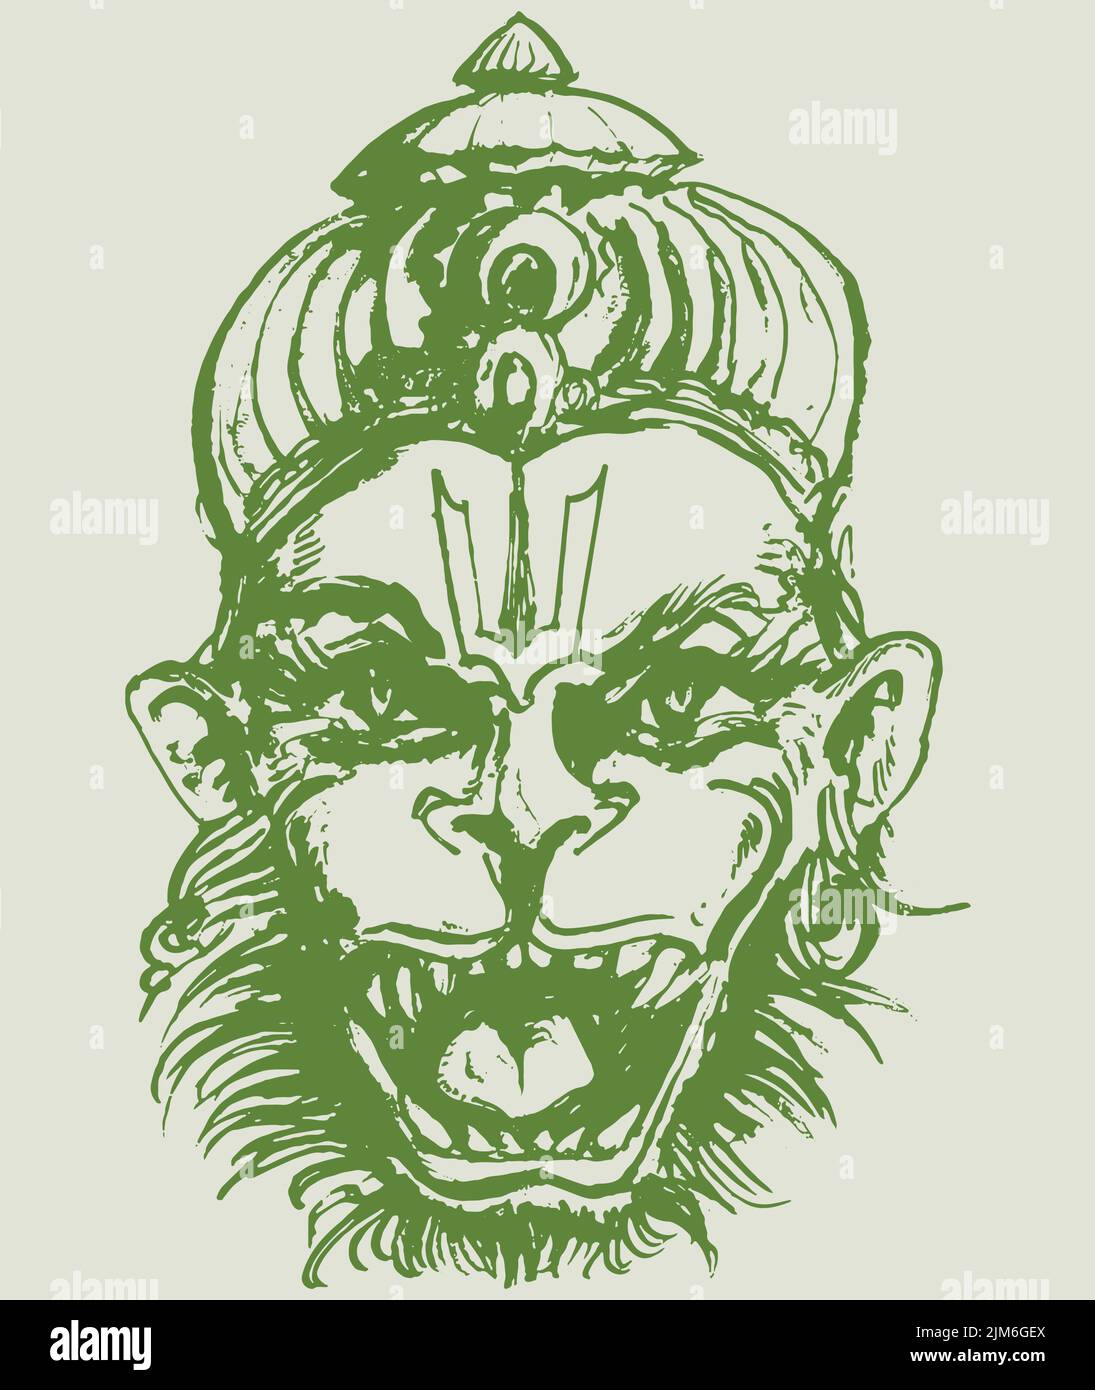 Ein Vektor des Hindu-gottes Lord Hanuman Skizze mit einem wütenden Gesicht auf einem grünen Hintergrund Stock Vektor